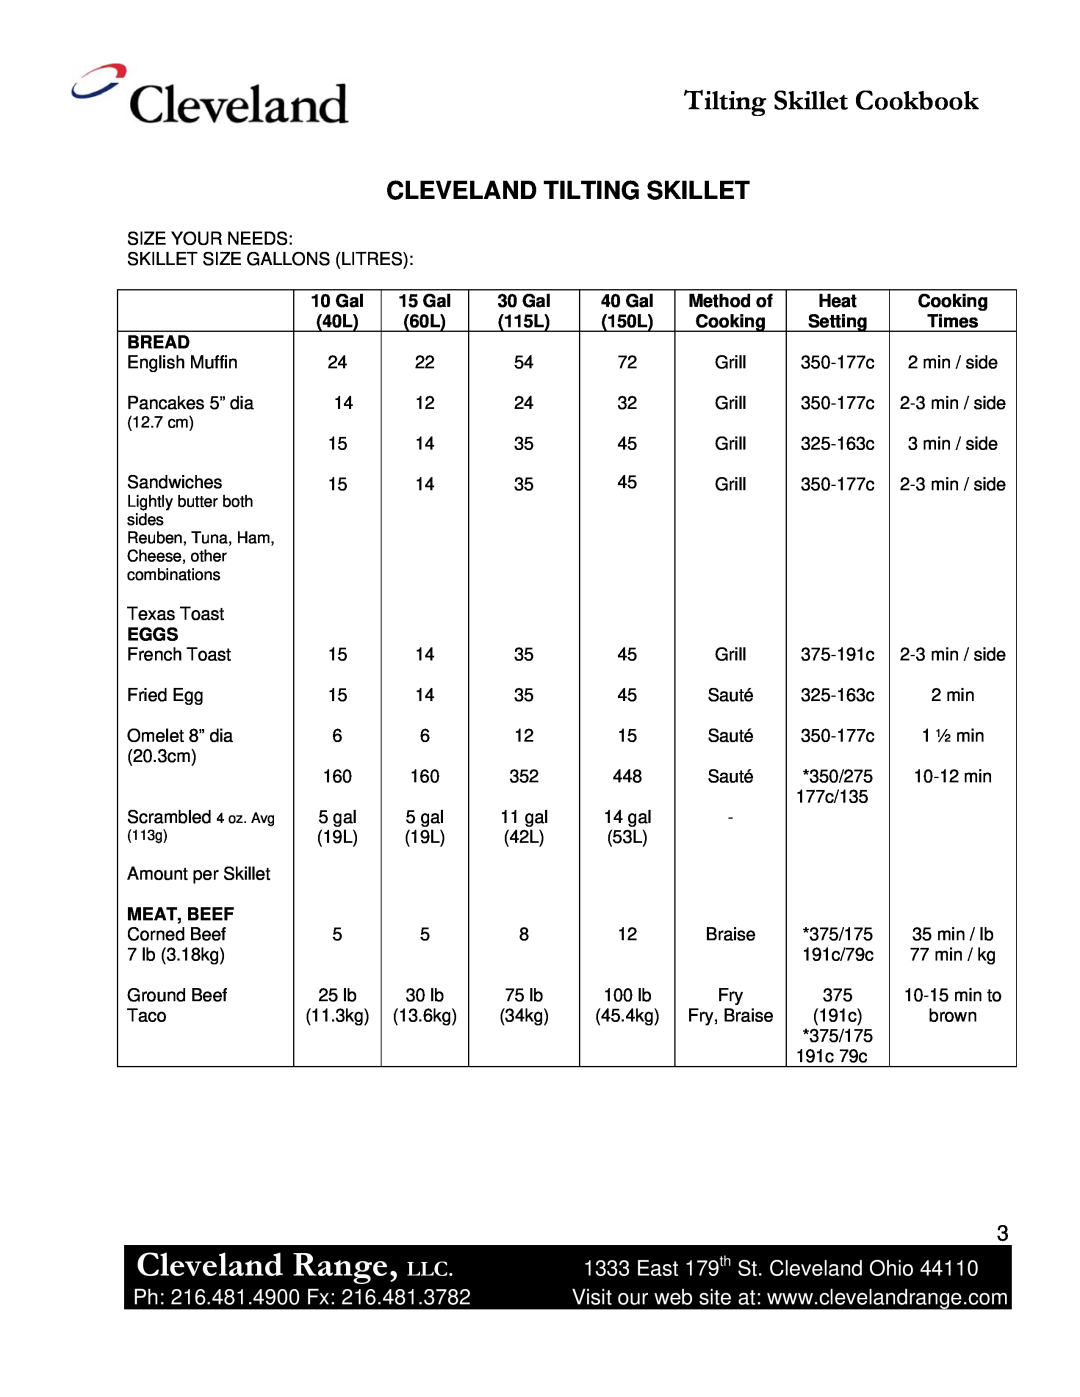 Cleveland Range Skillet/Braising manual Cleveland Tilting Skillet, Cleveland Range, LLC, Tilting Skillet Cookbook 